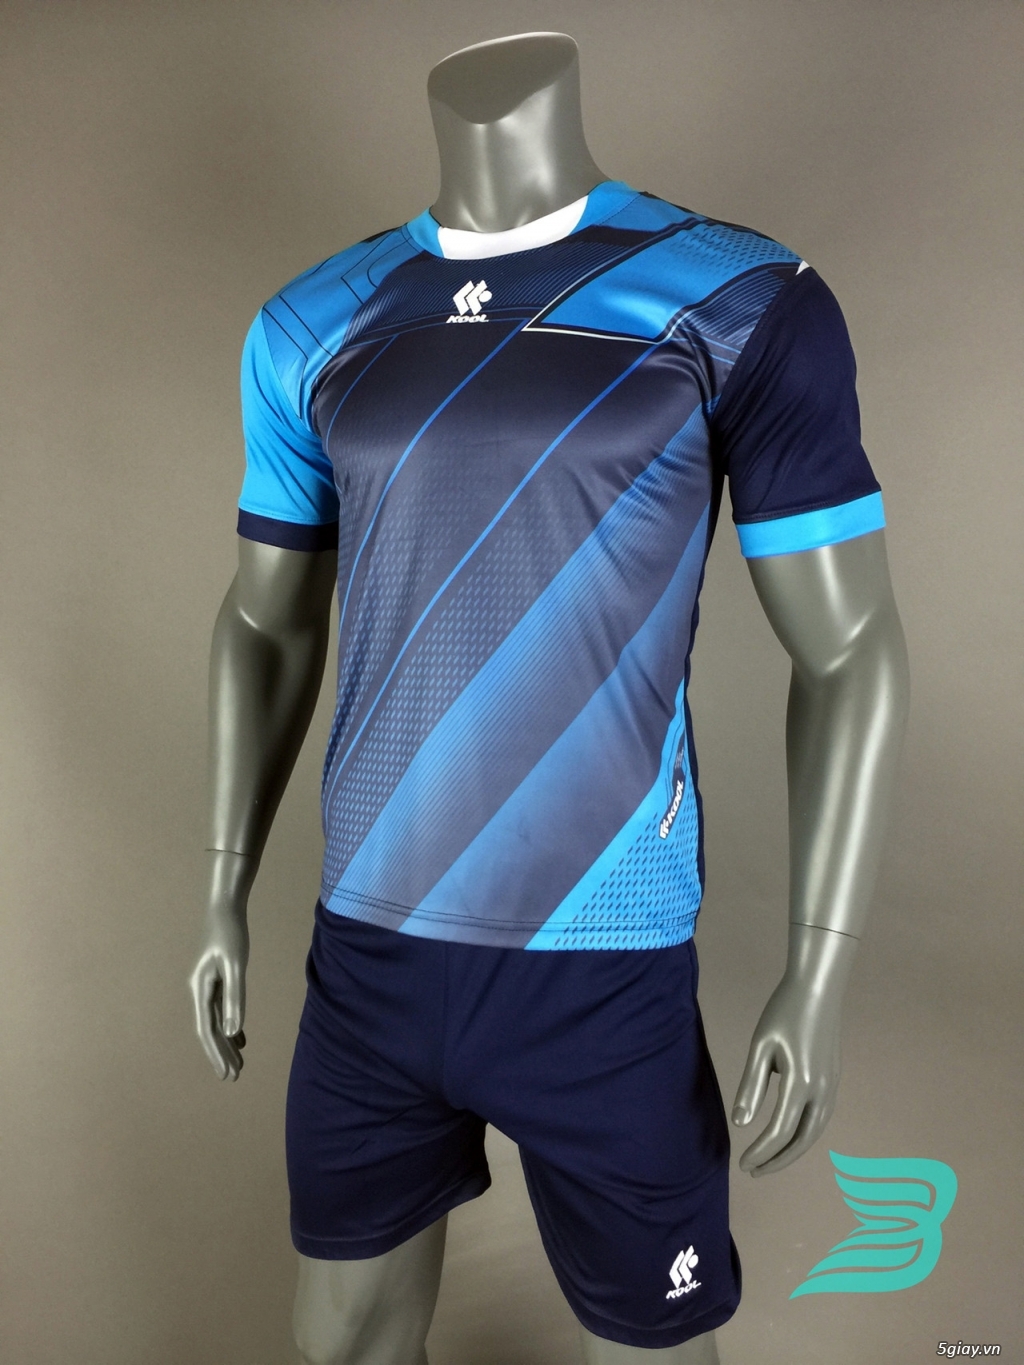 BẢO UYÊN SPORT - Chuyên cung cấp quần áo bóng đá với giá cạnh tranh kèm nhiều ưu đãi - 31